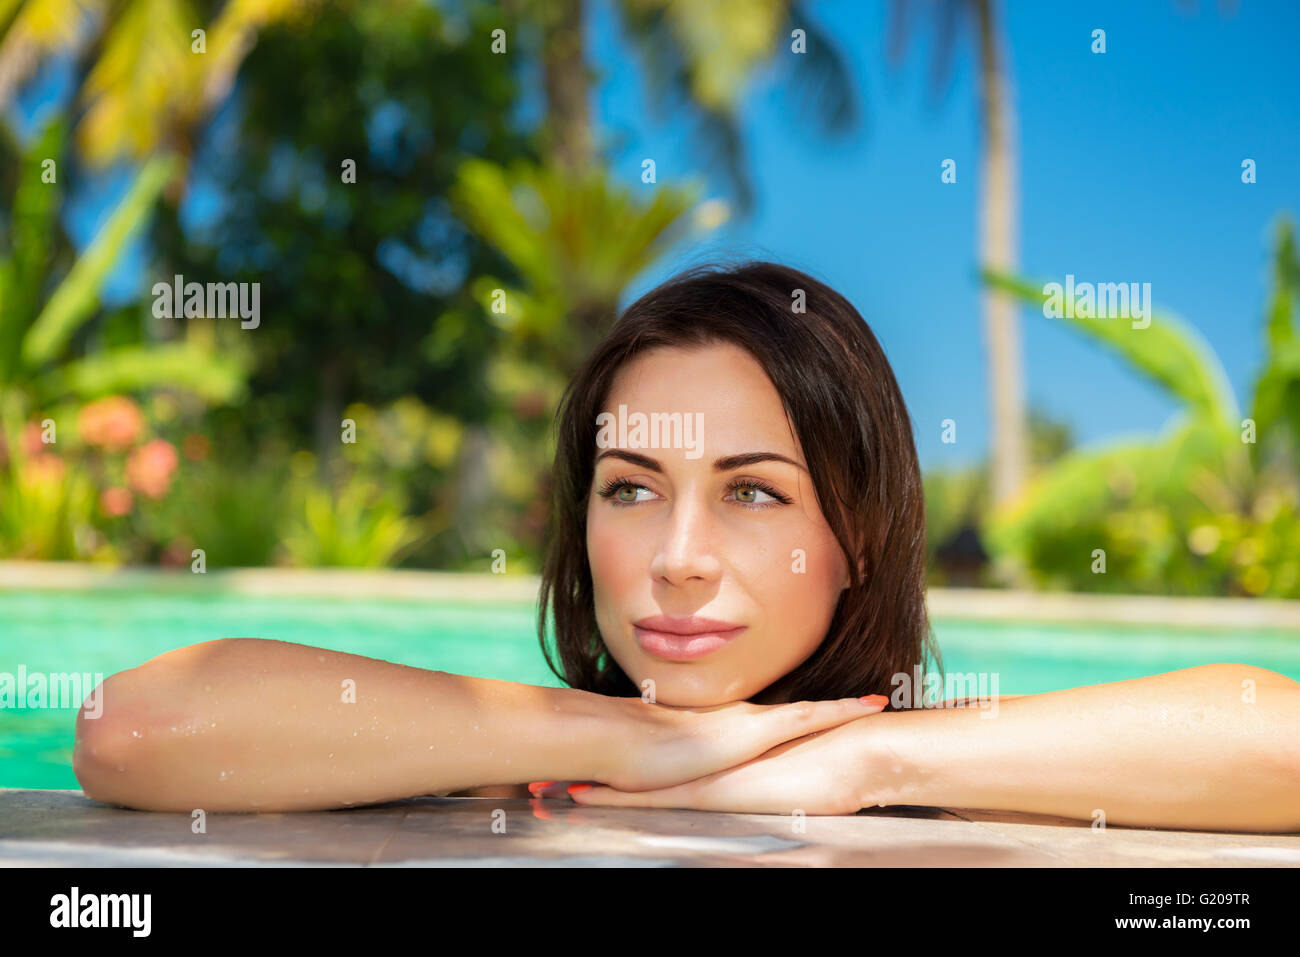 Porträt einer schönen ruhigen Frau im Swimming Pool, entspannen in einem kalten, erfrischenden Wasser an heißen Sommertag Stockfoto